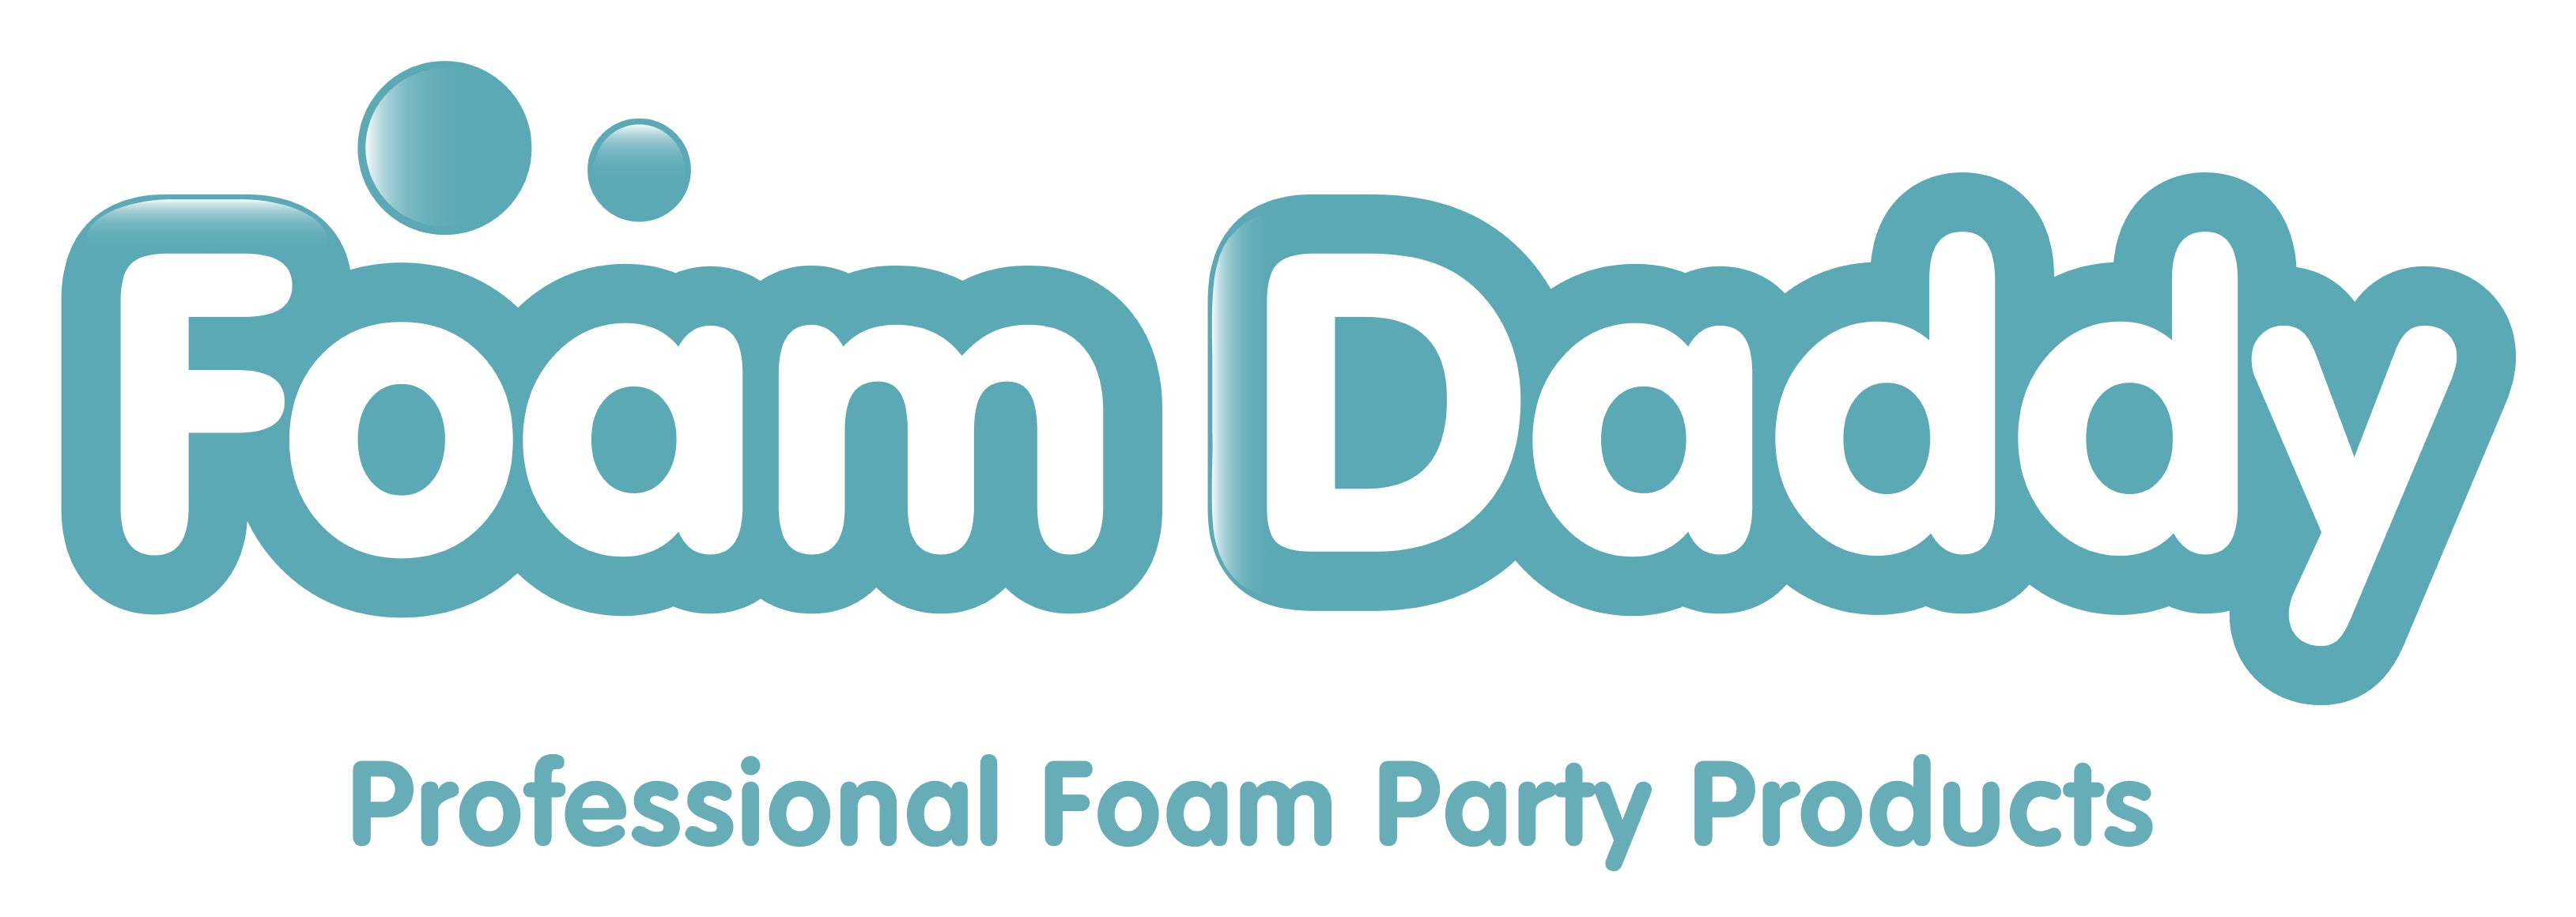 Foamy Foam Machine – Large – Foam machine sales, foam party